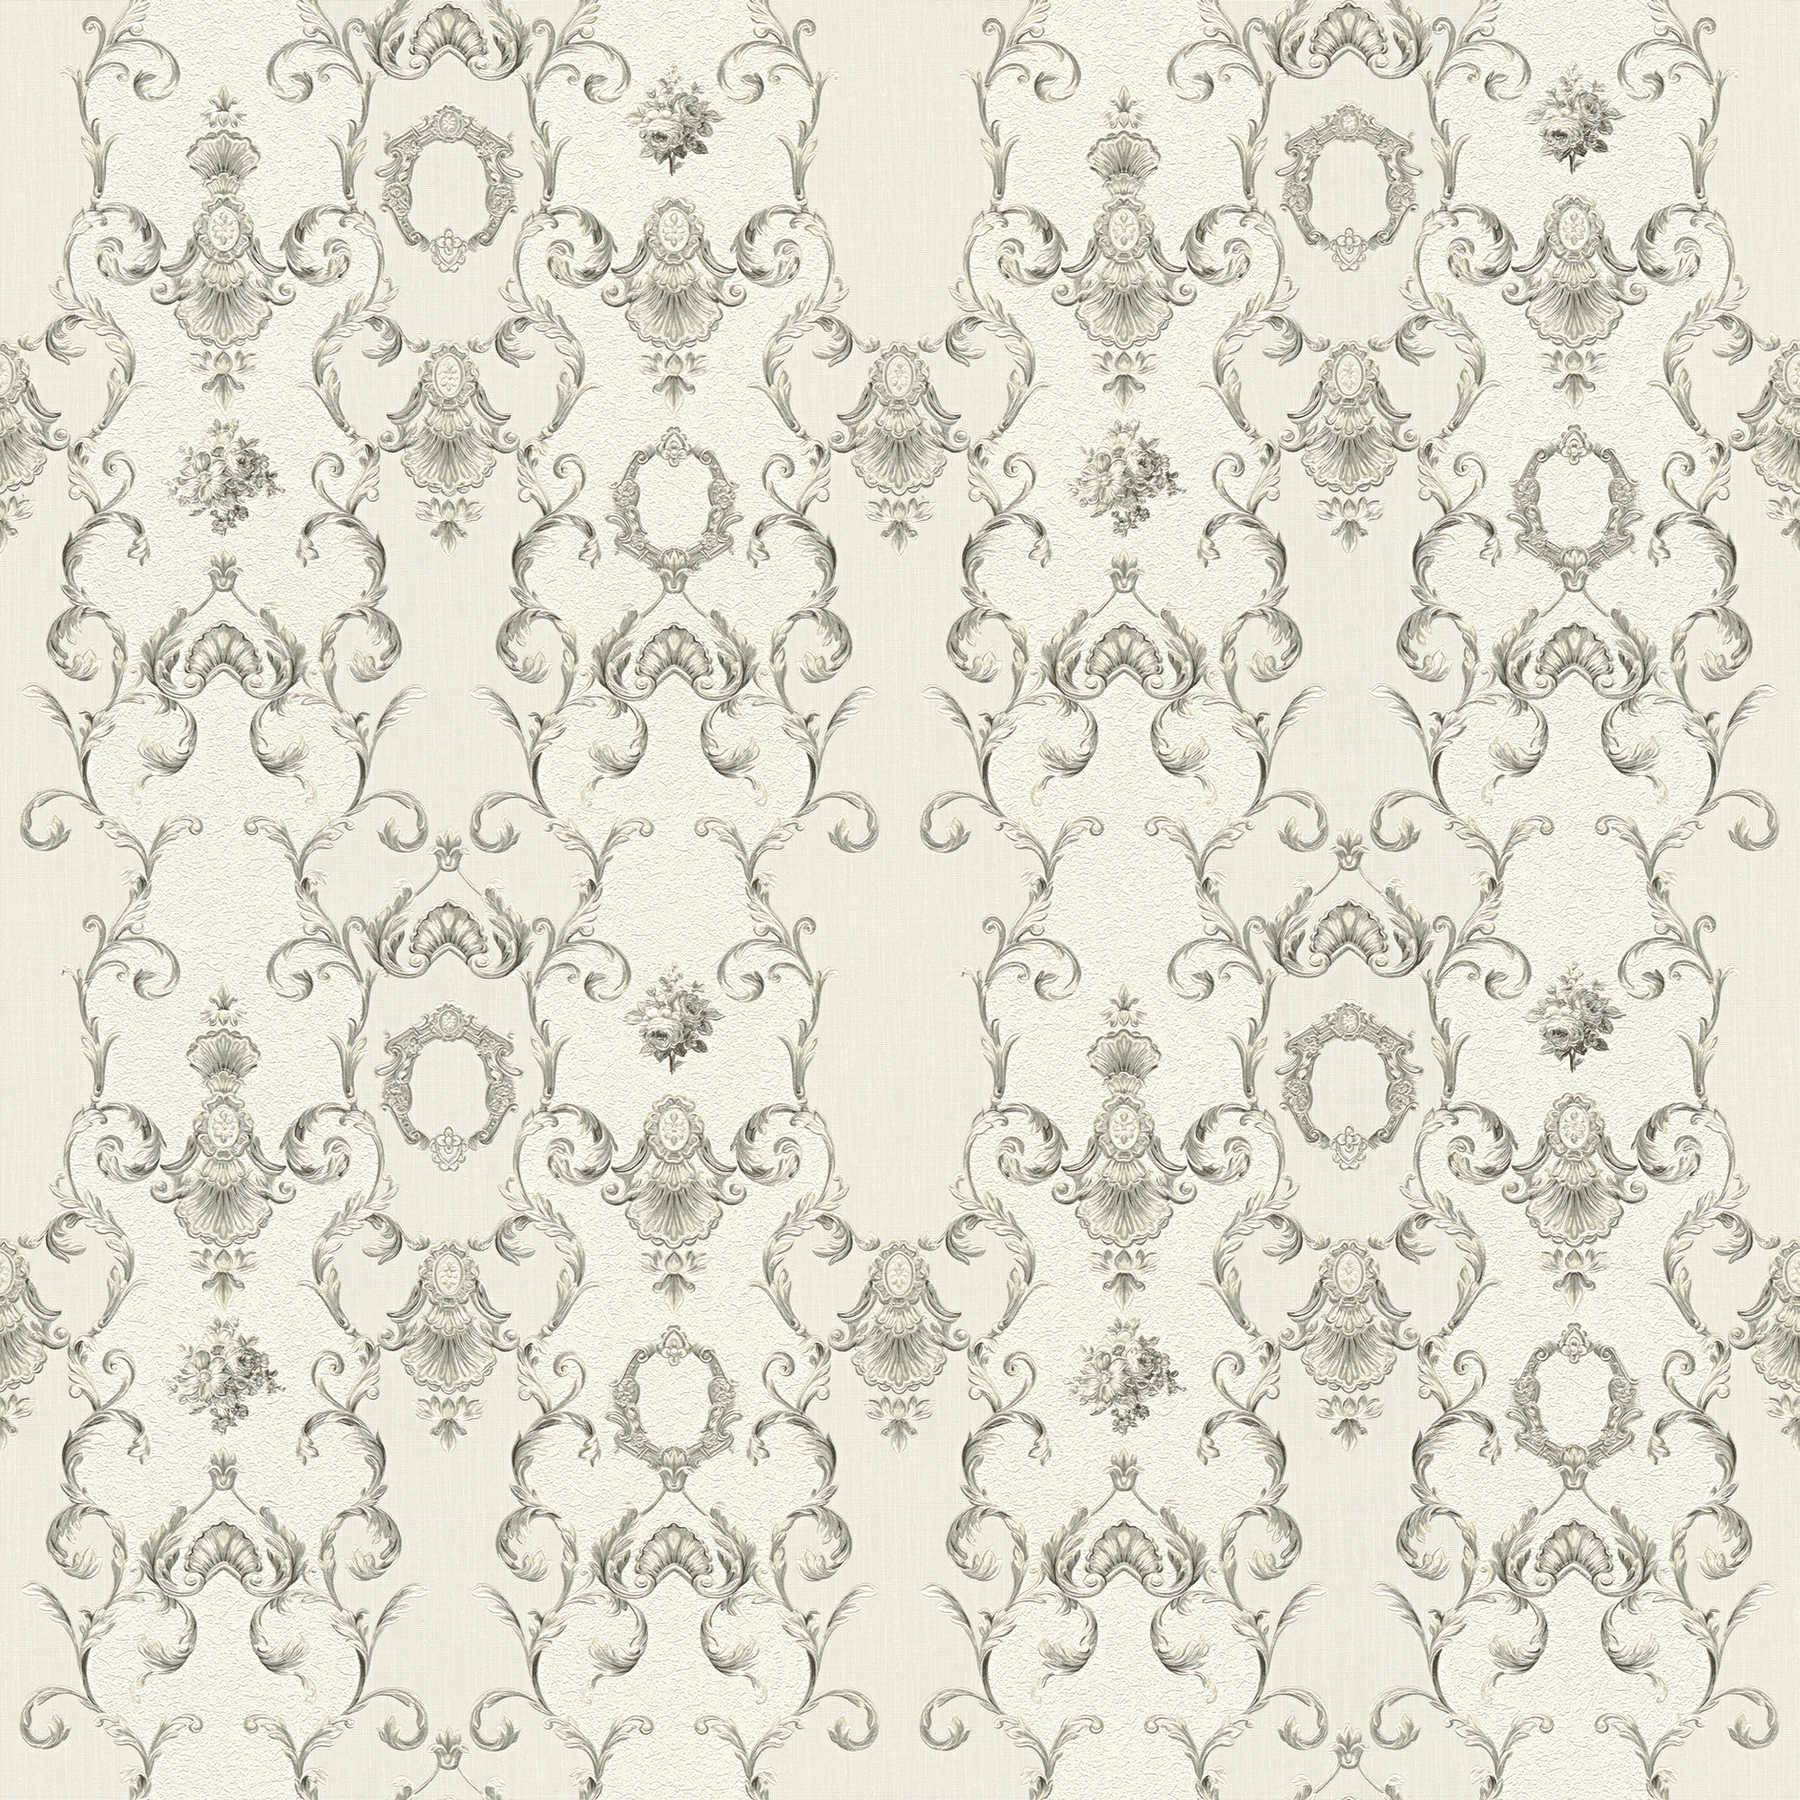 Ornamenteel behang in classicistische stijl met metallic design - grijs, wit
